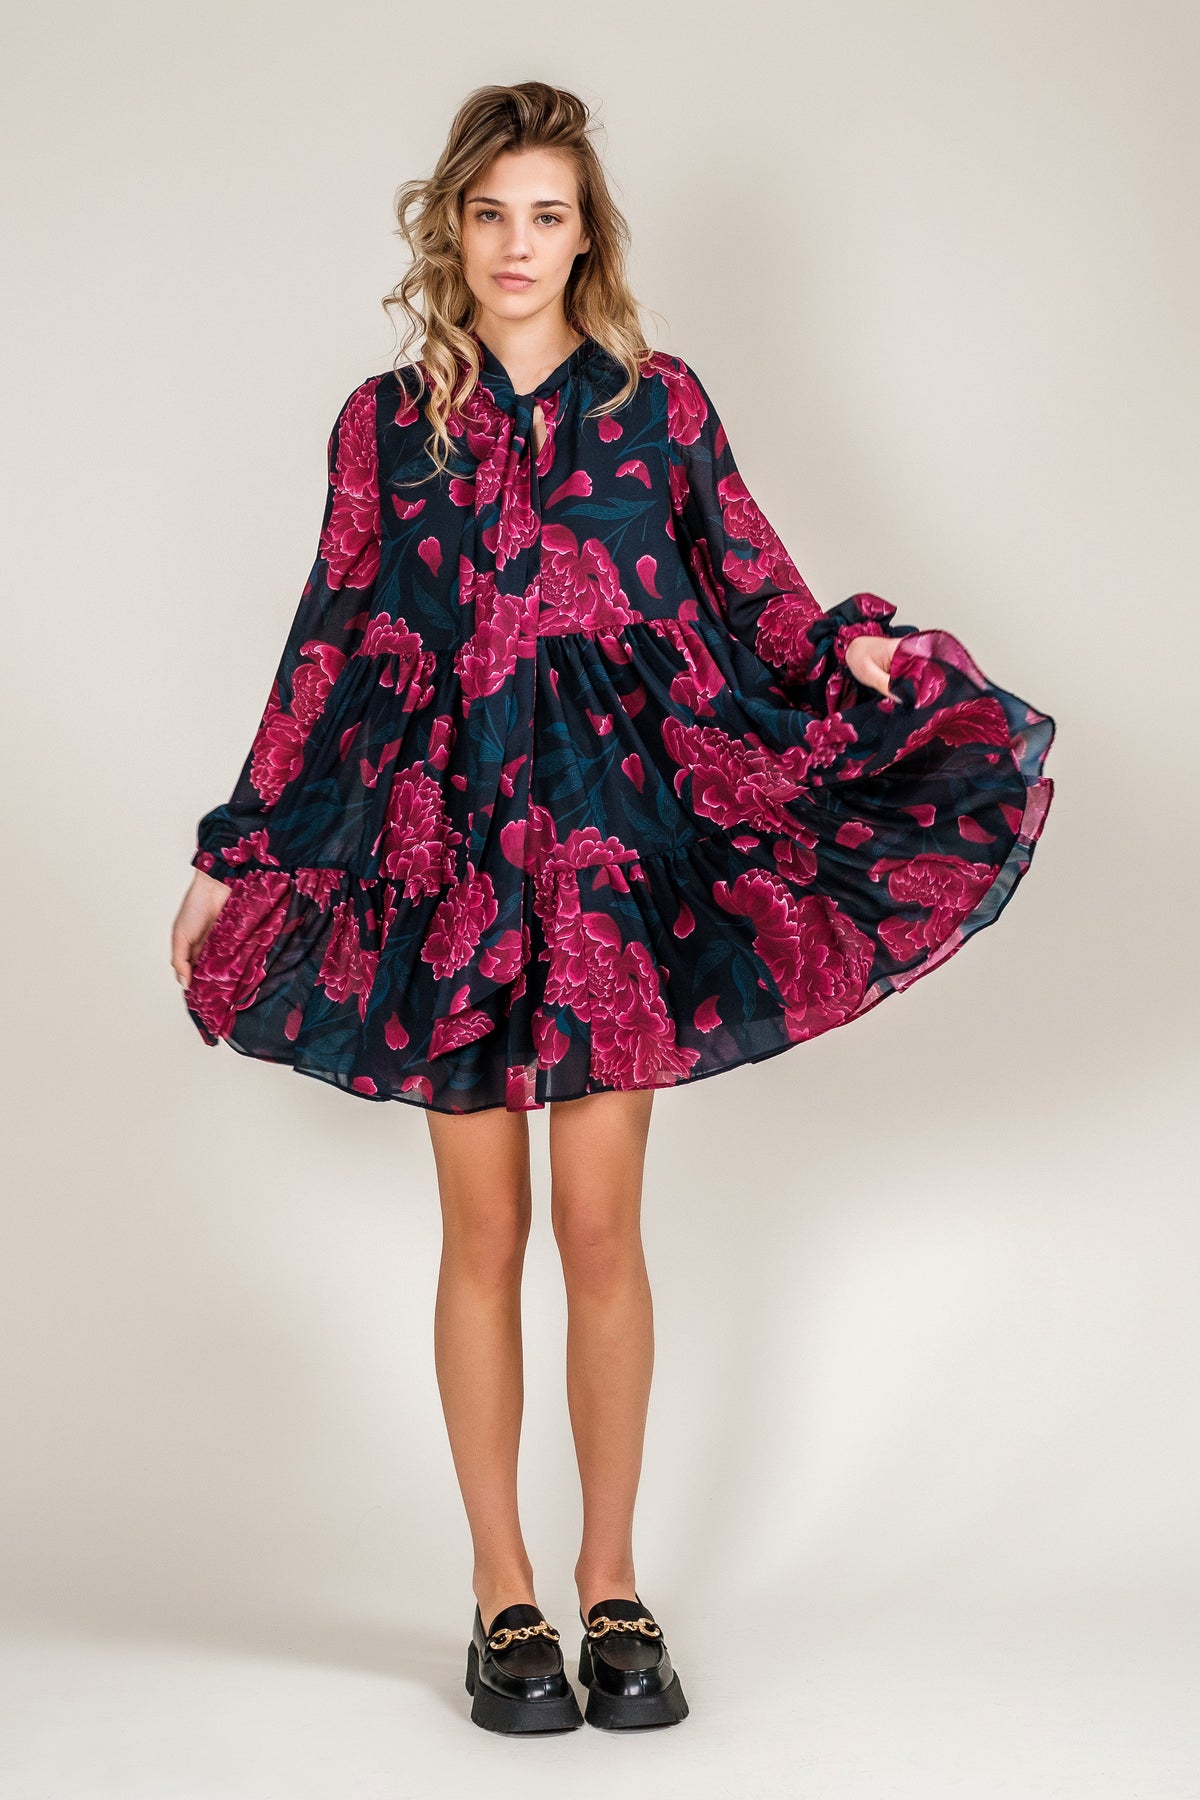 short floral dress black and pink wide skirt